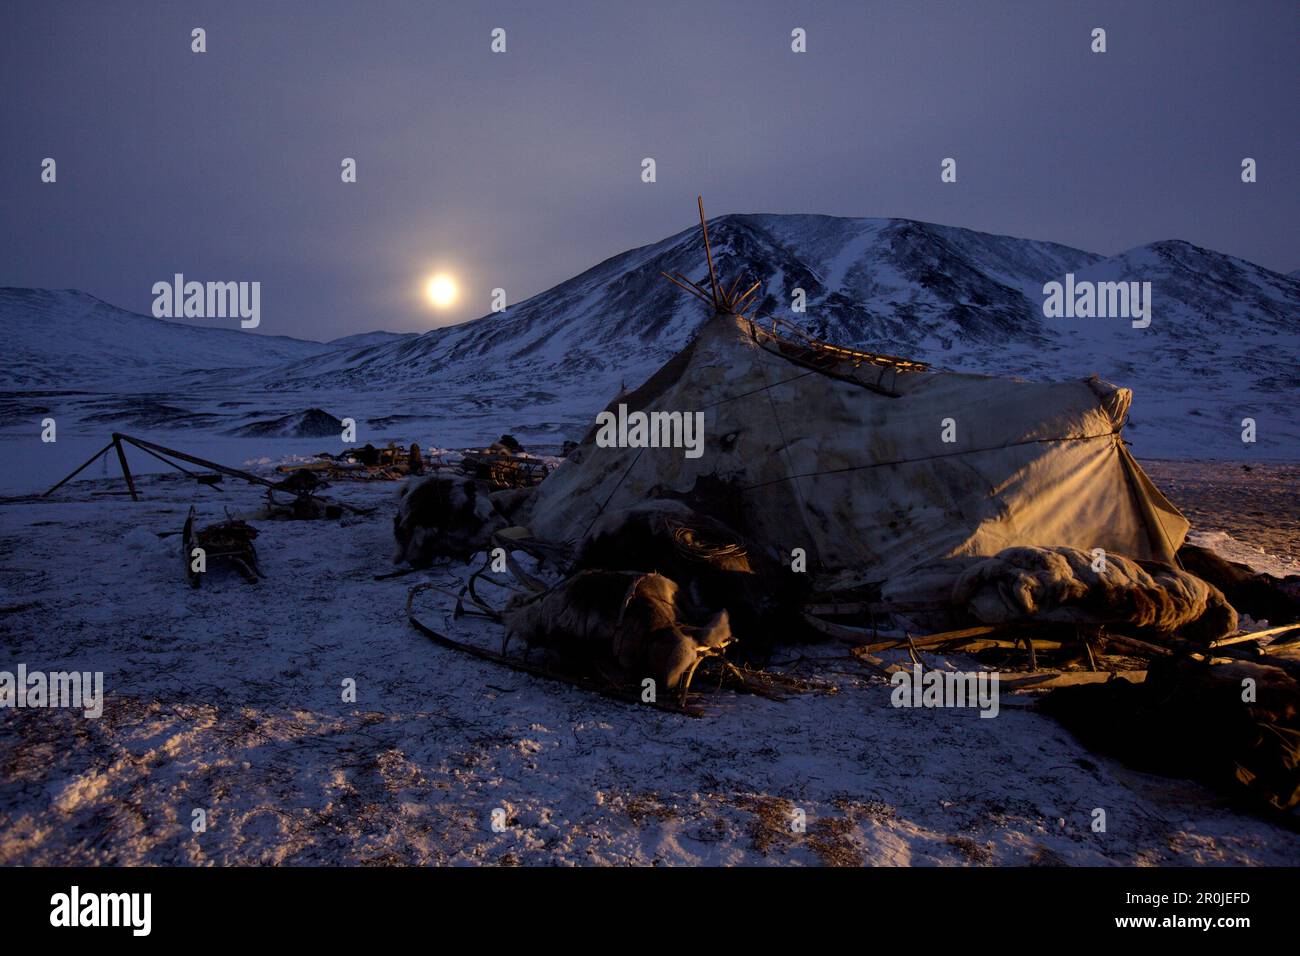 Yaranga, Zelt sibirischer Rentier-Nomaden mit aufsteigendem Mond, Autonomer Okrug Chukotka, Sibirien, Russland Stockfoto